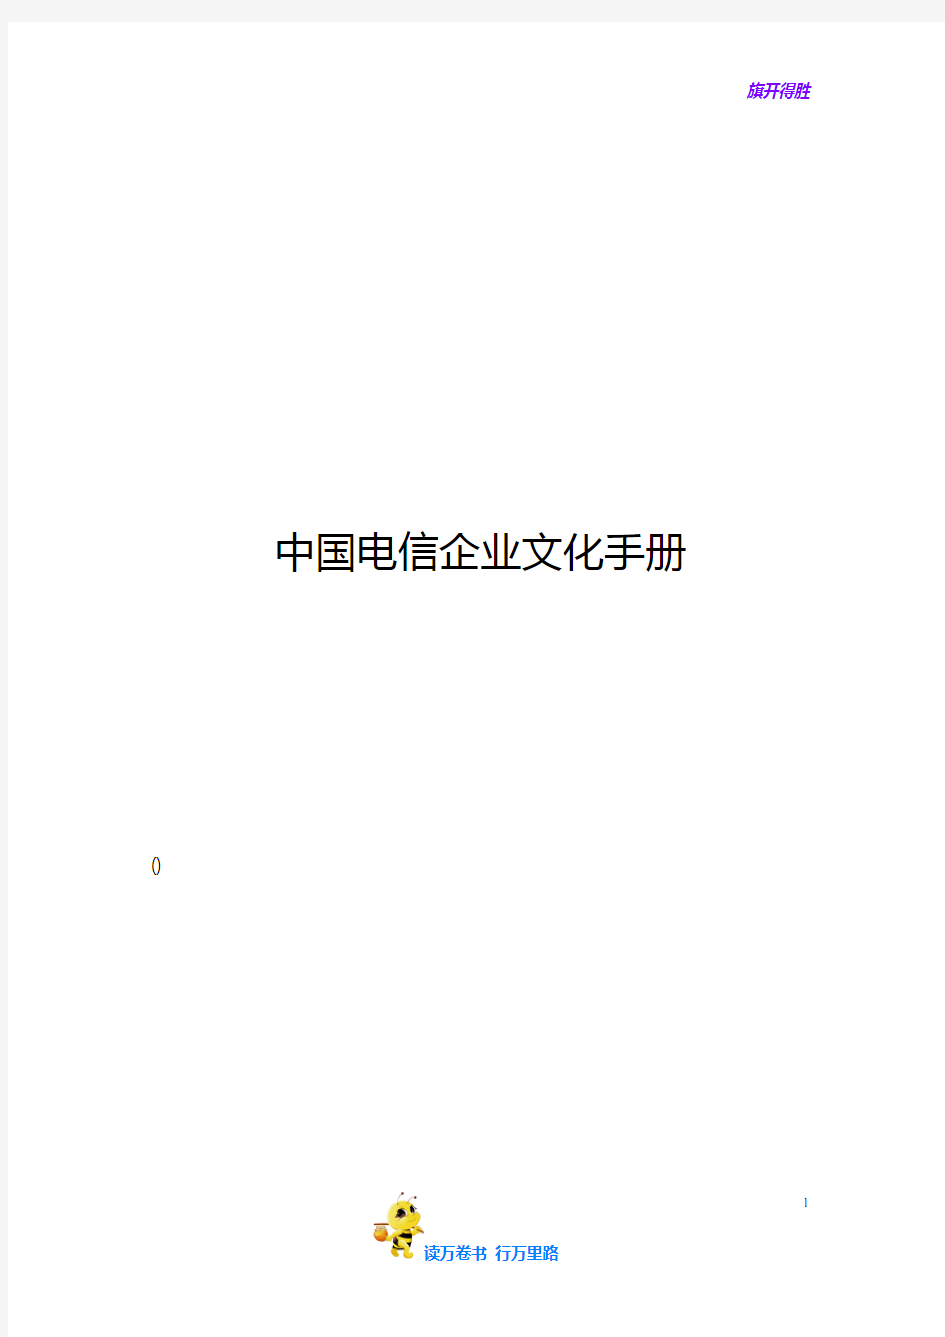 中国电信企业文化手册(DOC 15页)【企管 精品】